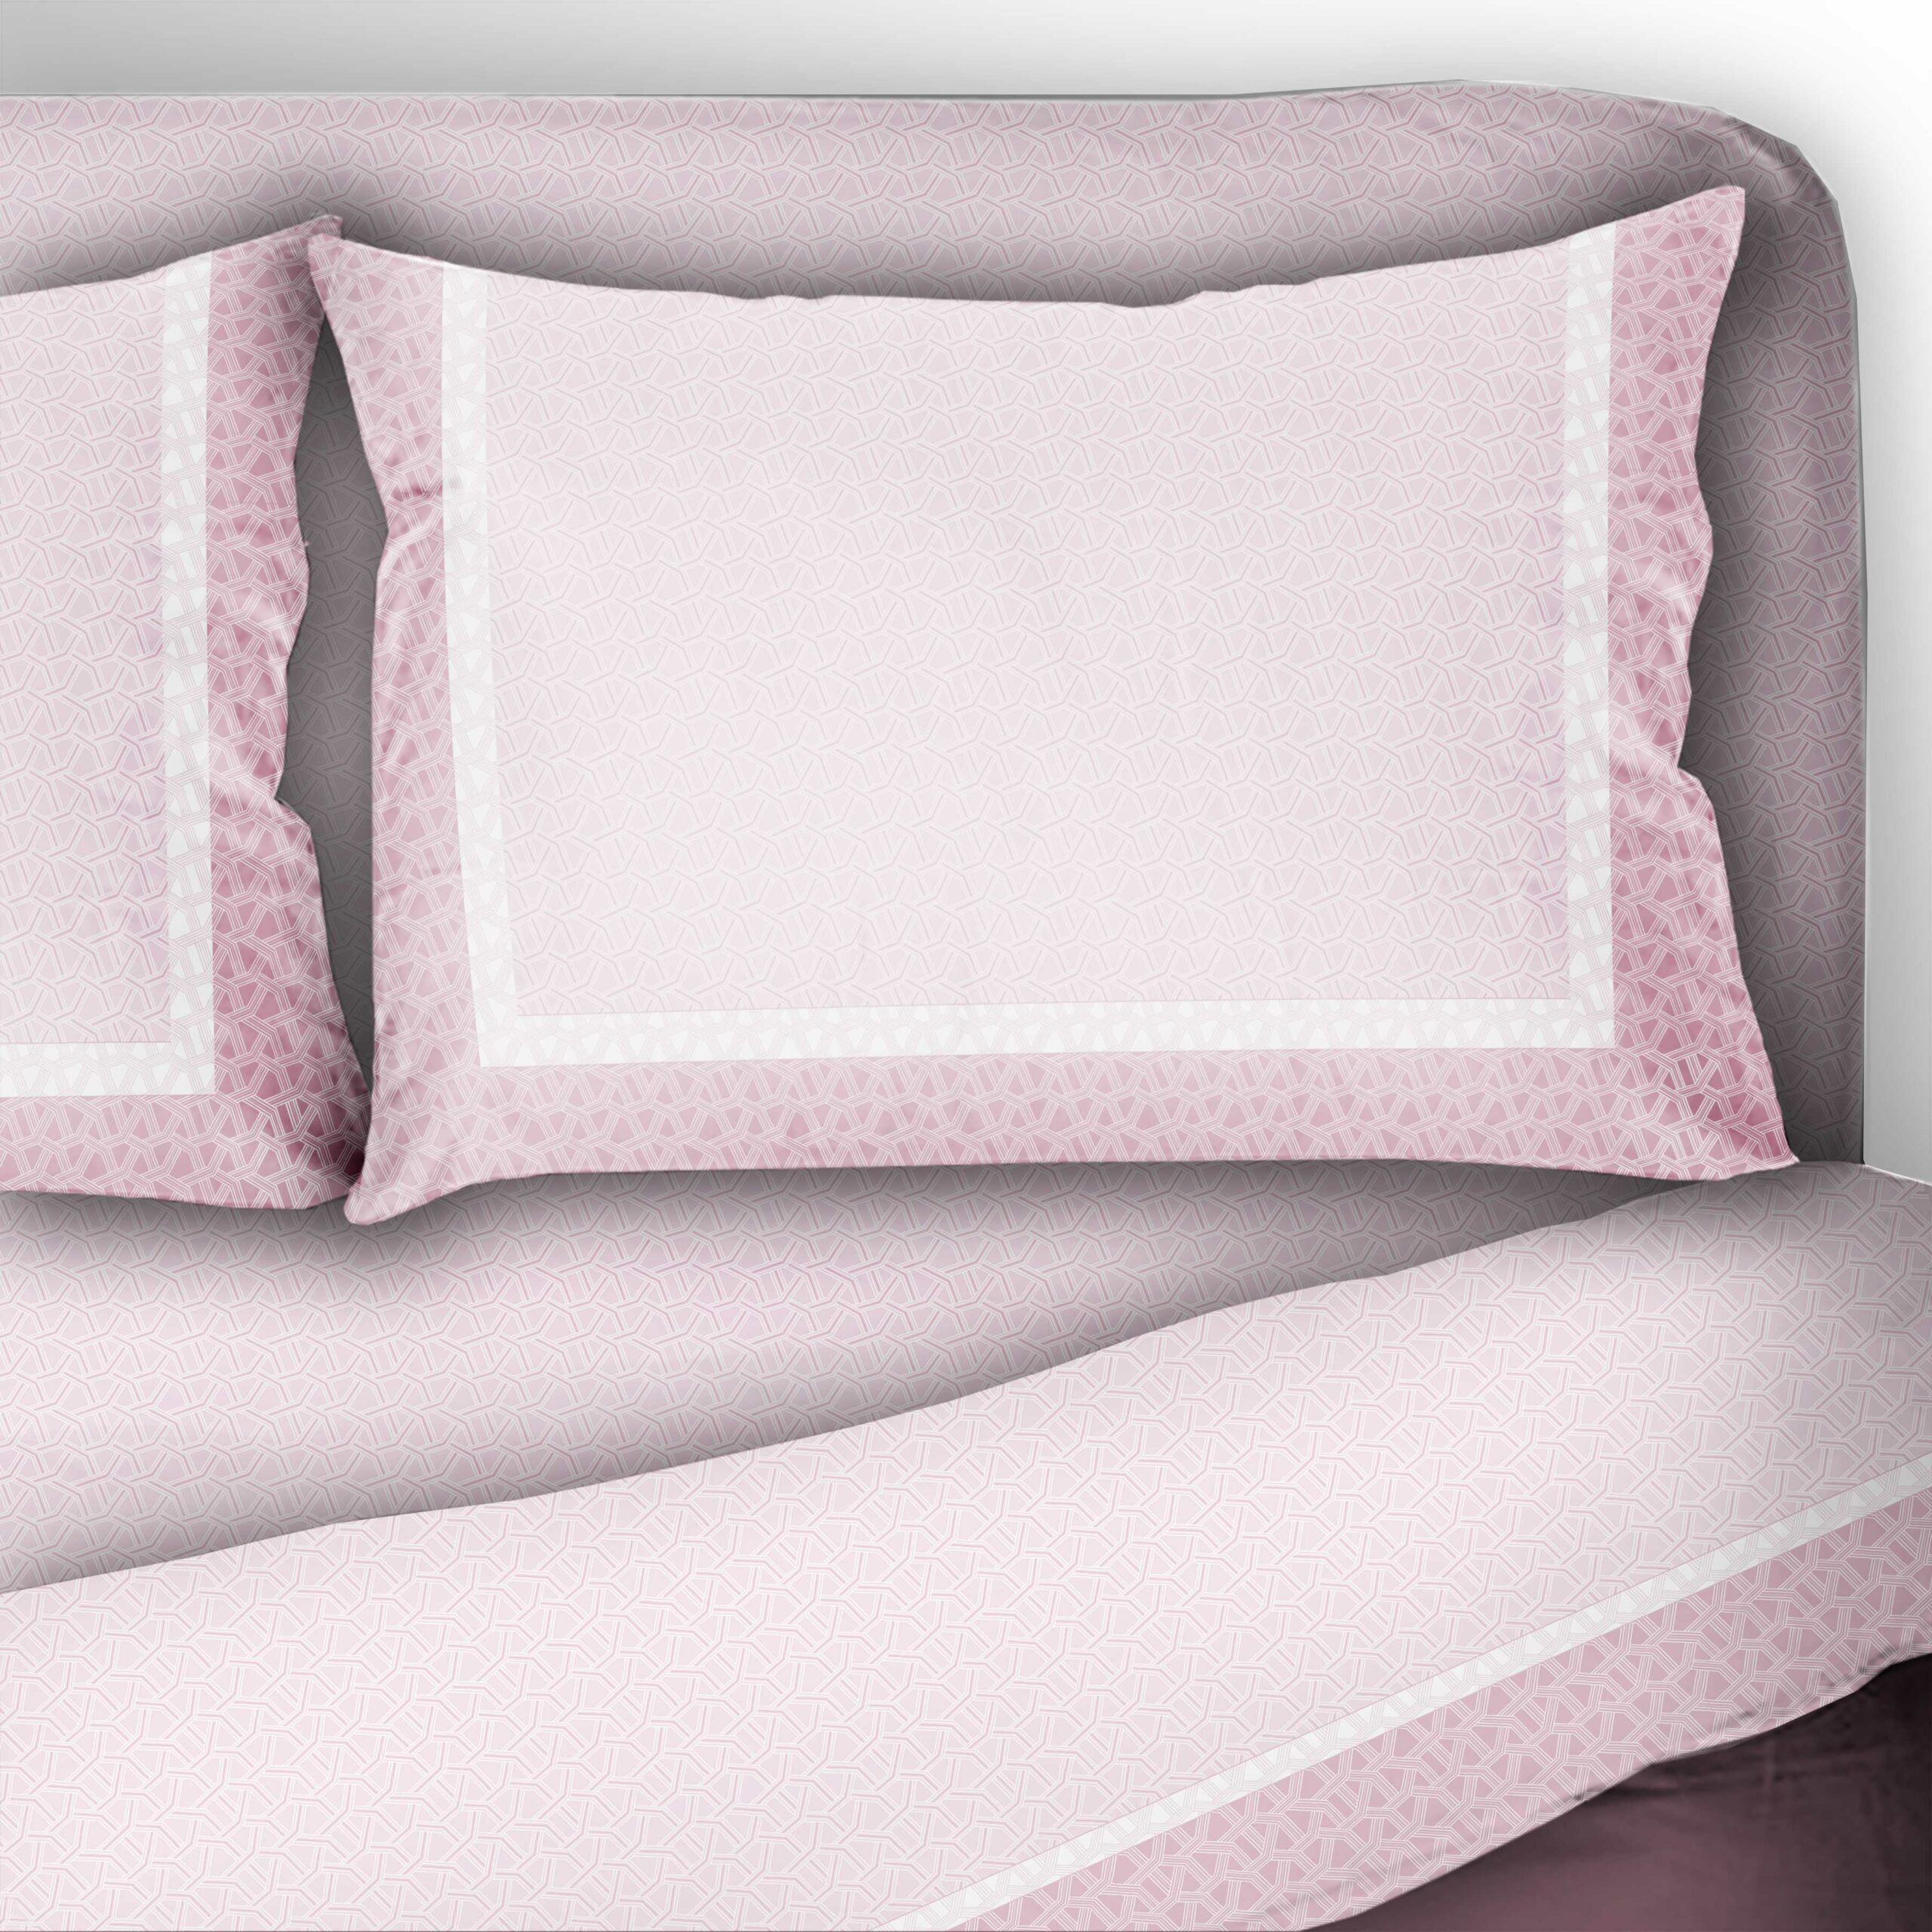 Settebello Abbigliamento - CALEFFI Completo lenzuola matrimoniale tessuto  Percalle di cotone disponibile nelle varianti rosa e azzurro €59,90